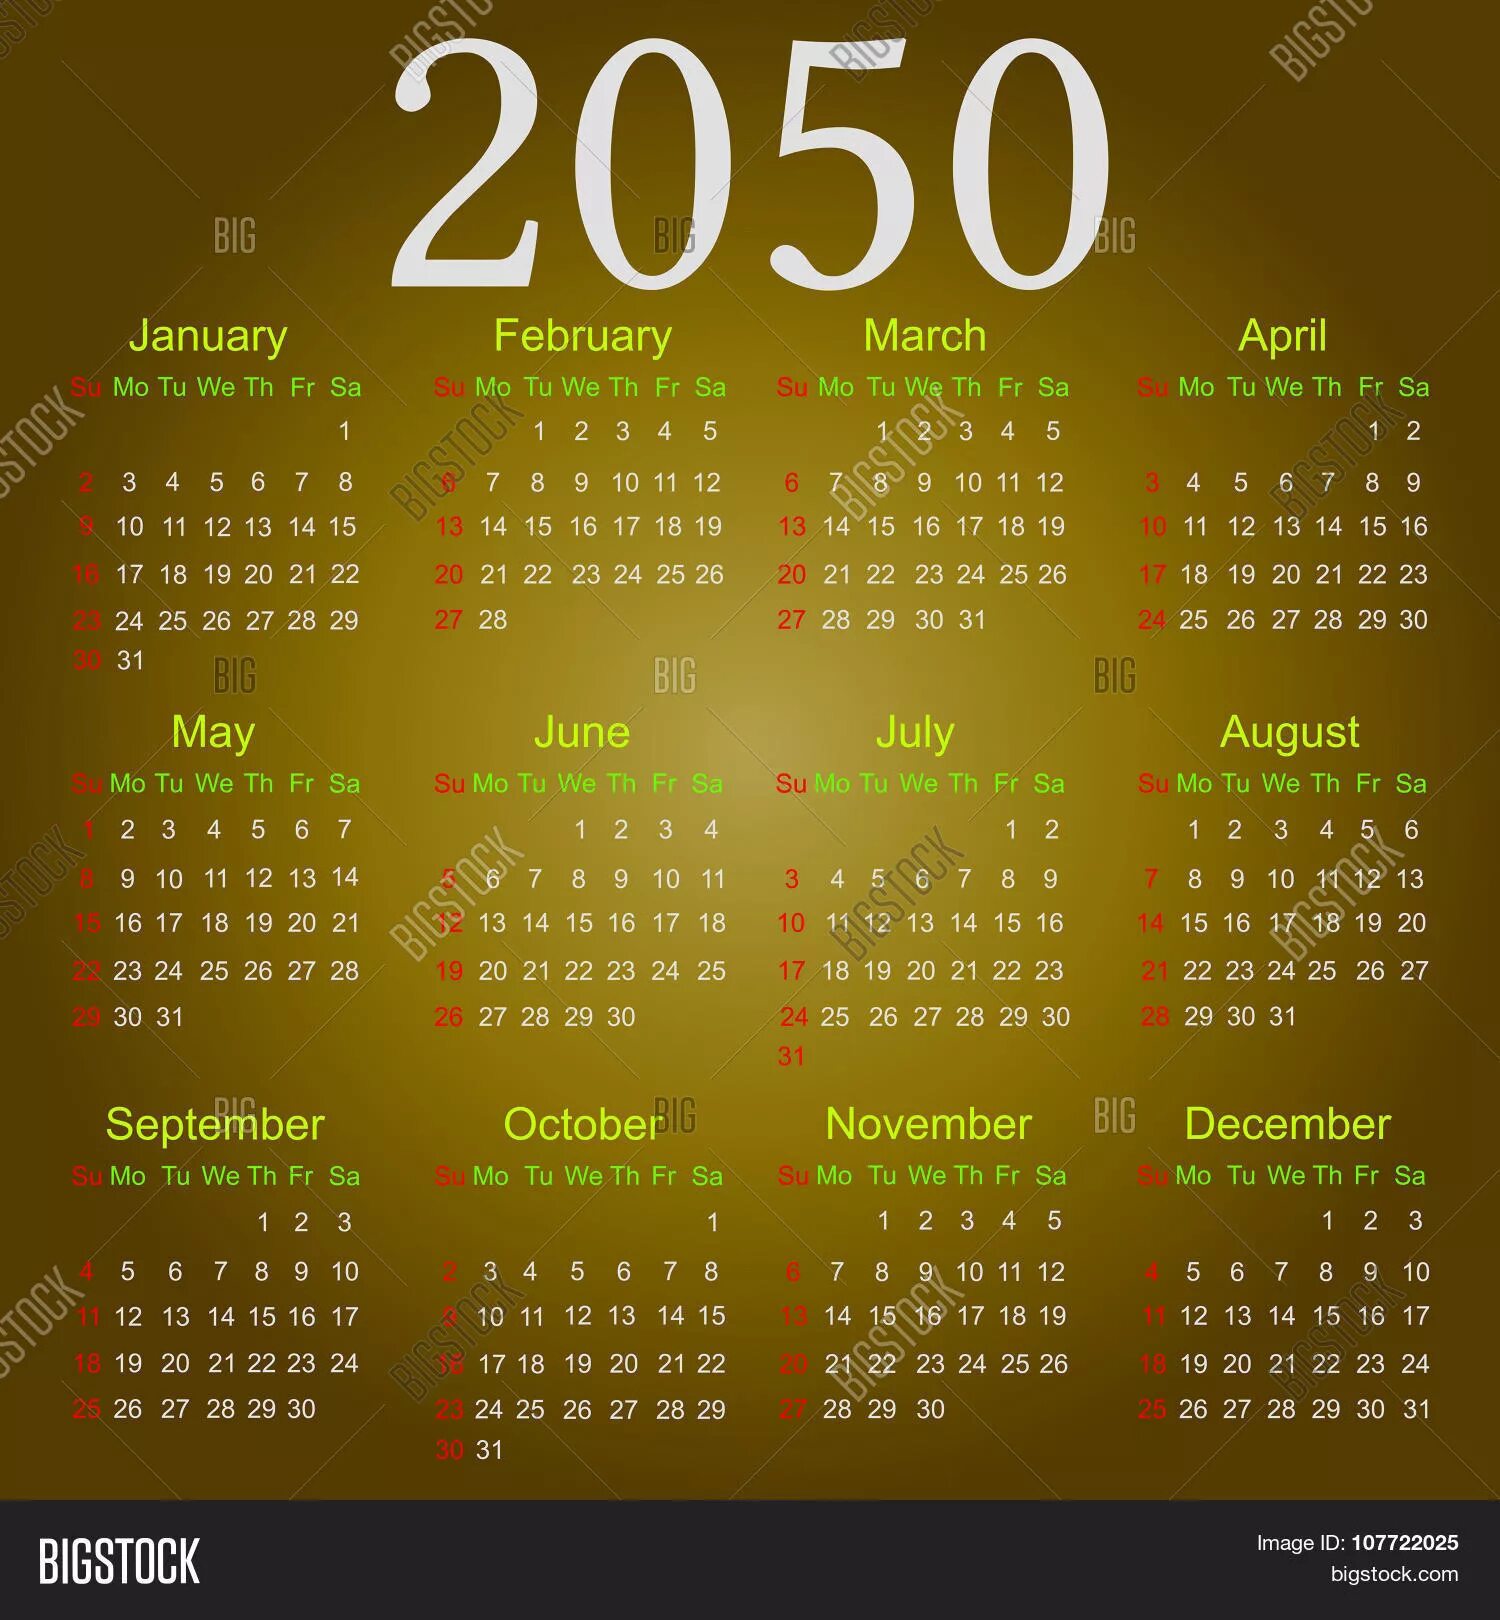 2040 год 25 октября какой день недели. Календарь 2050 года. Календарь 2033 года. Календарь 2033 года по месяцам. Календарь 2050 года на русском.